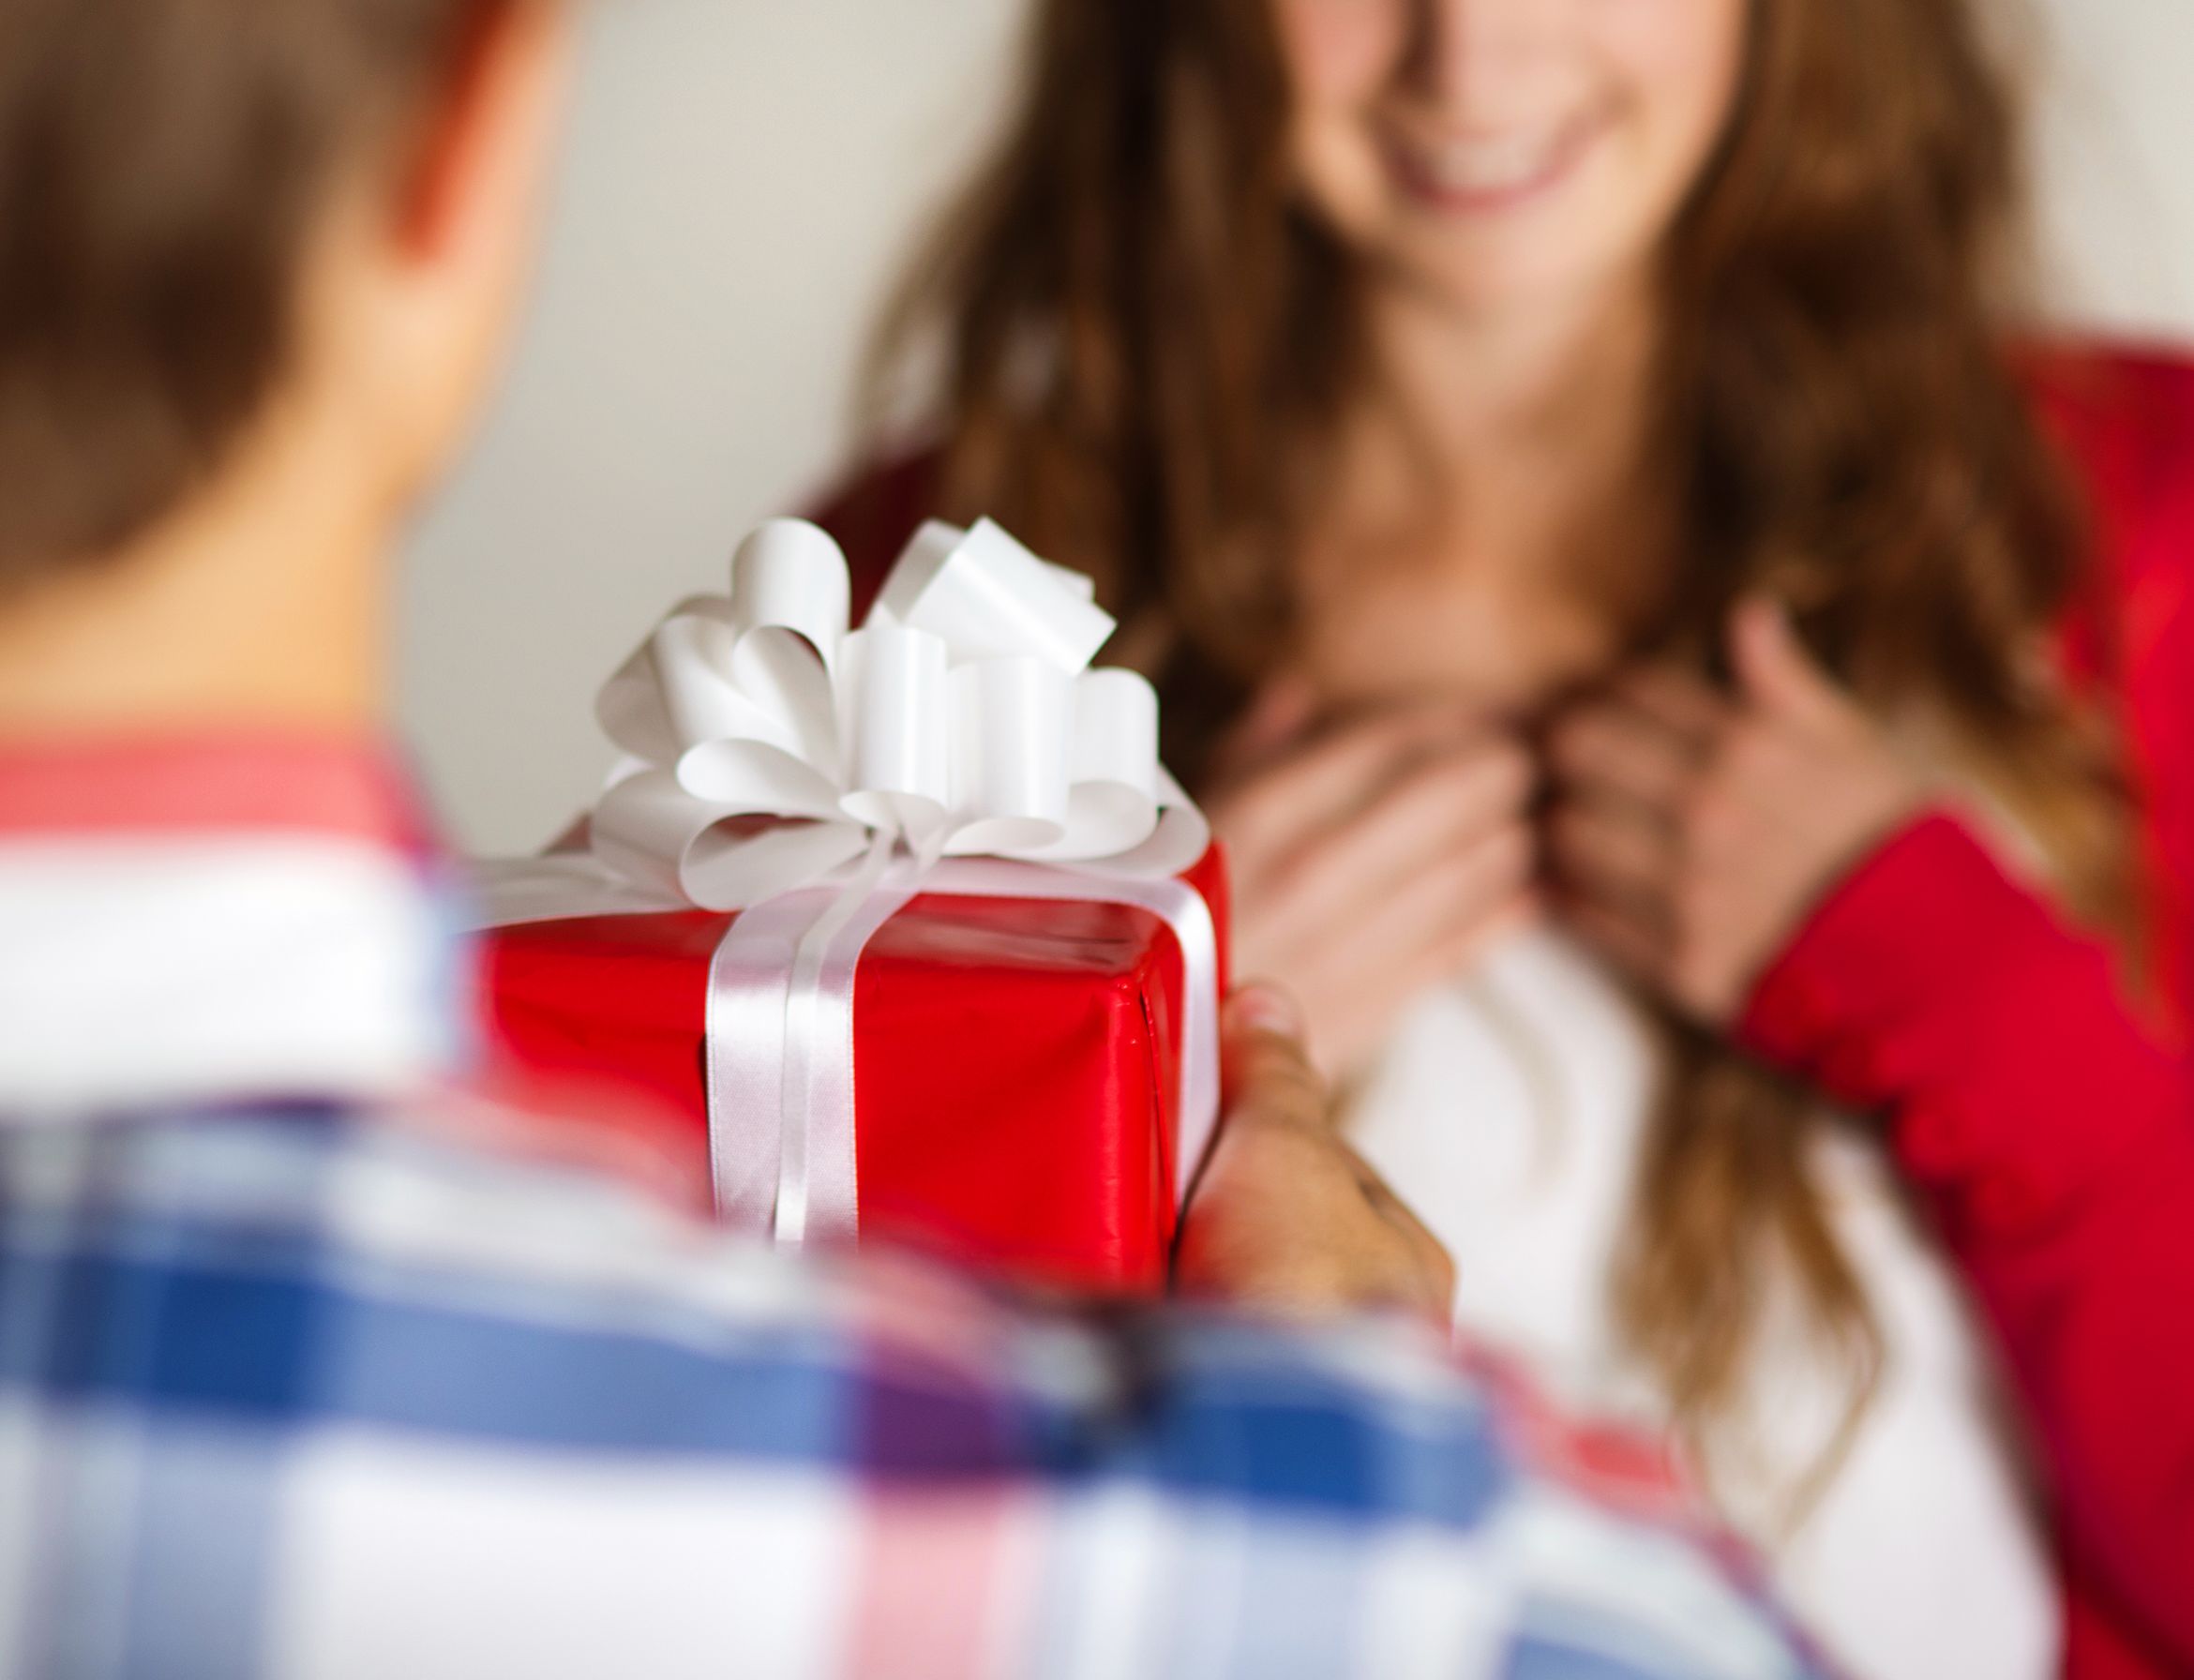 Какие подарки можно дарить женщинам